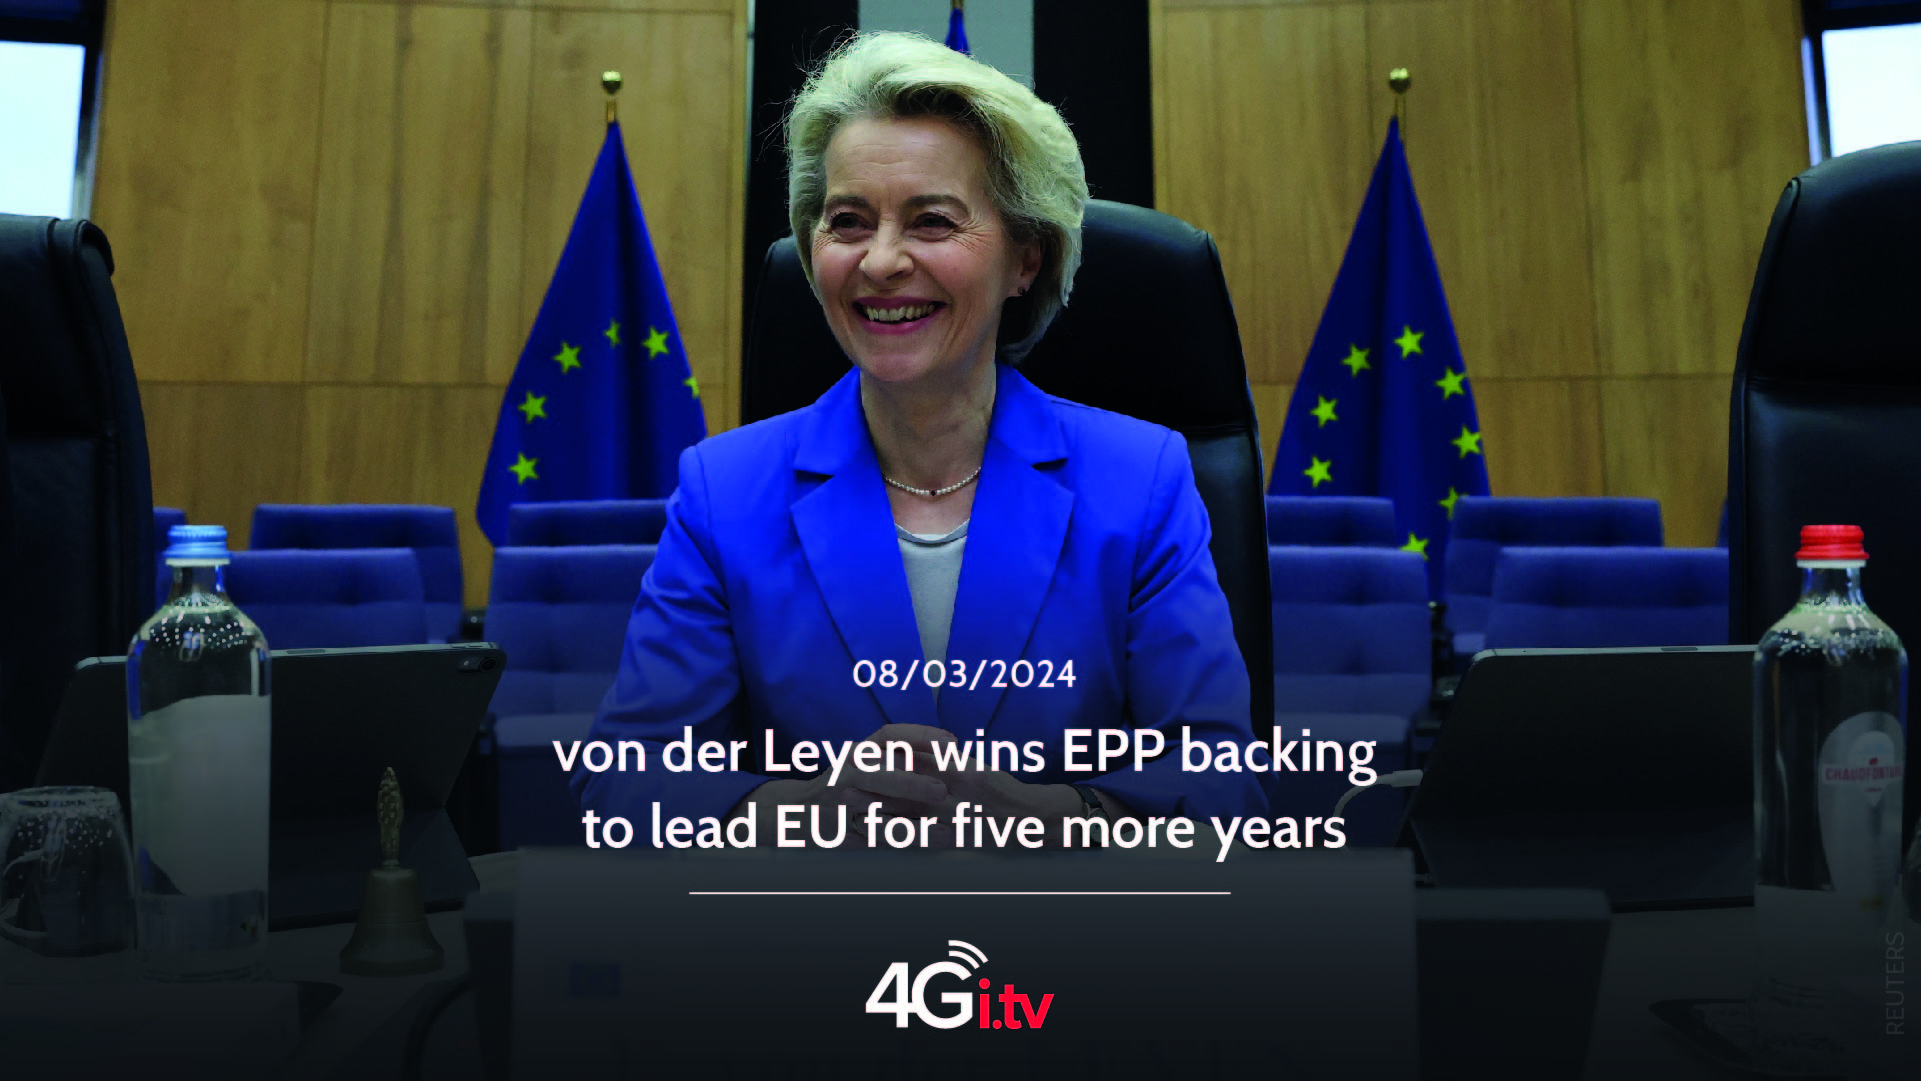 Lesen Sie mehr über den Artikel von der Leyen wins EPP backing to lead EU for five more years